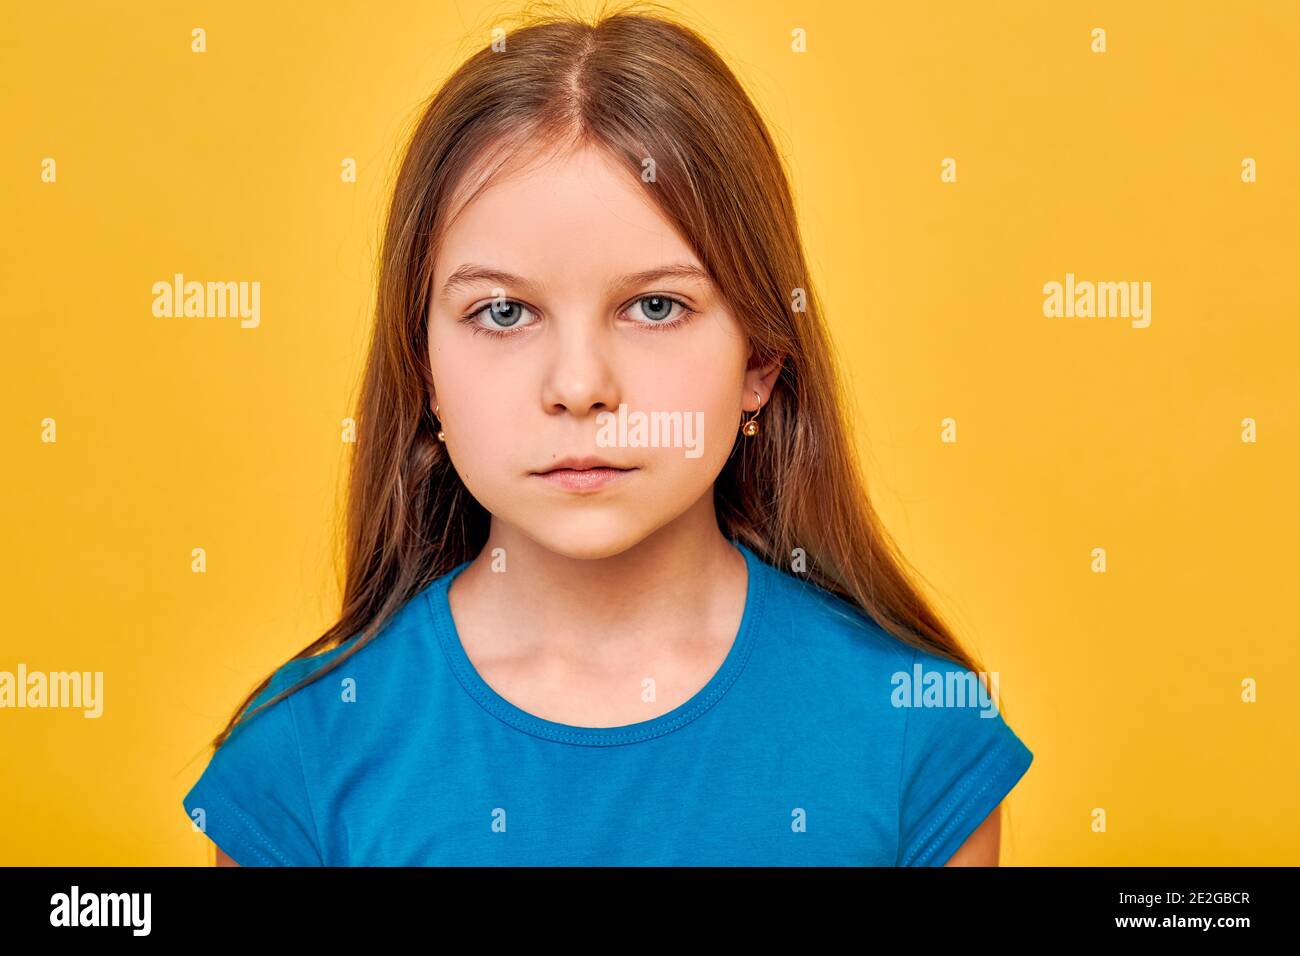 Bambina che indossa una t-shirt blu, etnia caucasica, serio e guardando la macchina fotografica, su sfondo oro fortuna Foto Stock